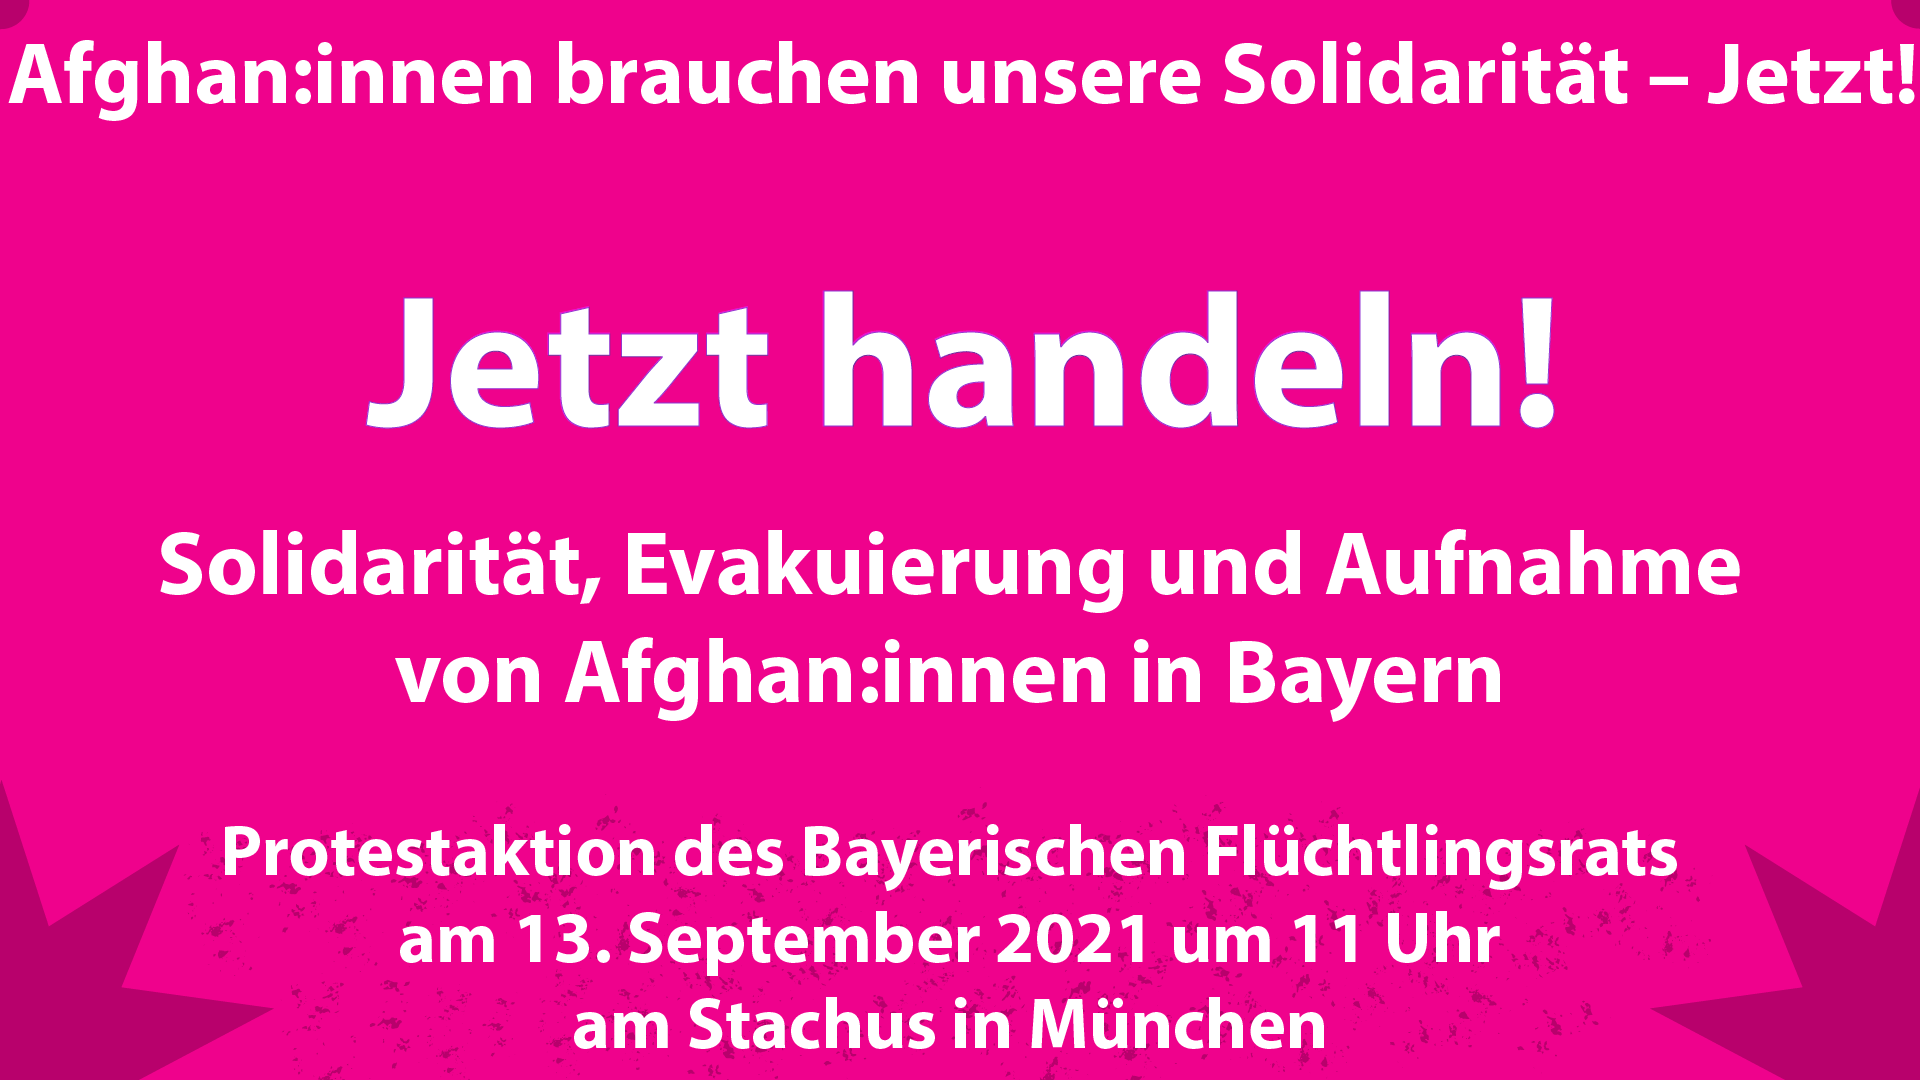 Protestaktion des Bayerischen Flüchtlingsrat, Solidarität, Evakuierung und Aufnahme von Afghaninnen und Afghanen in Bayern